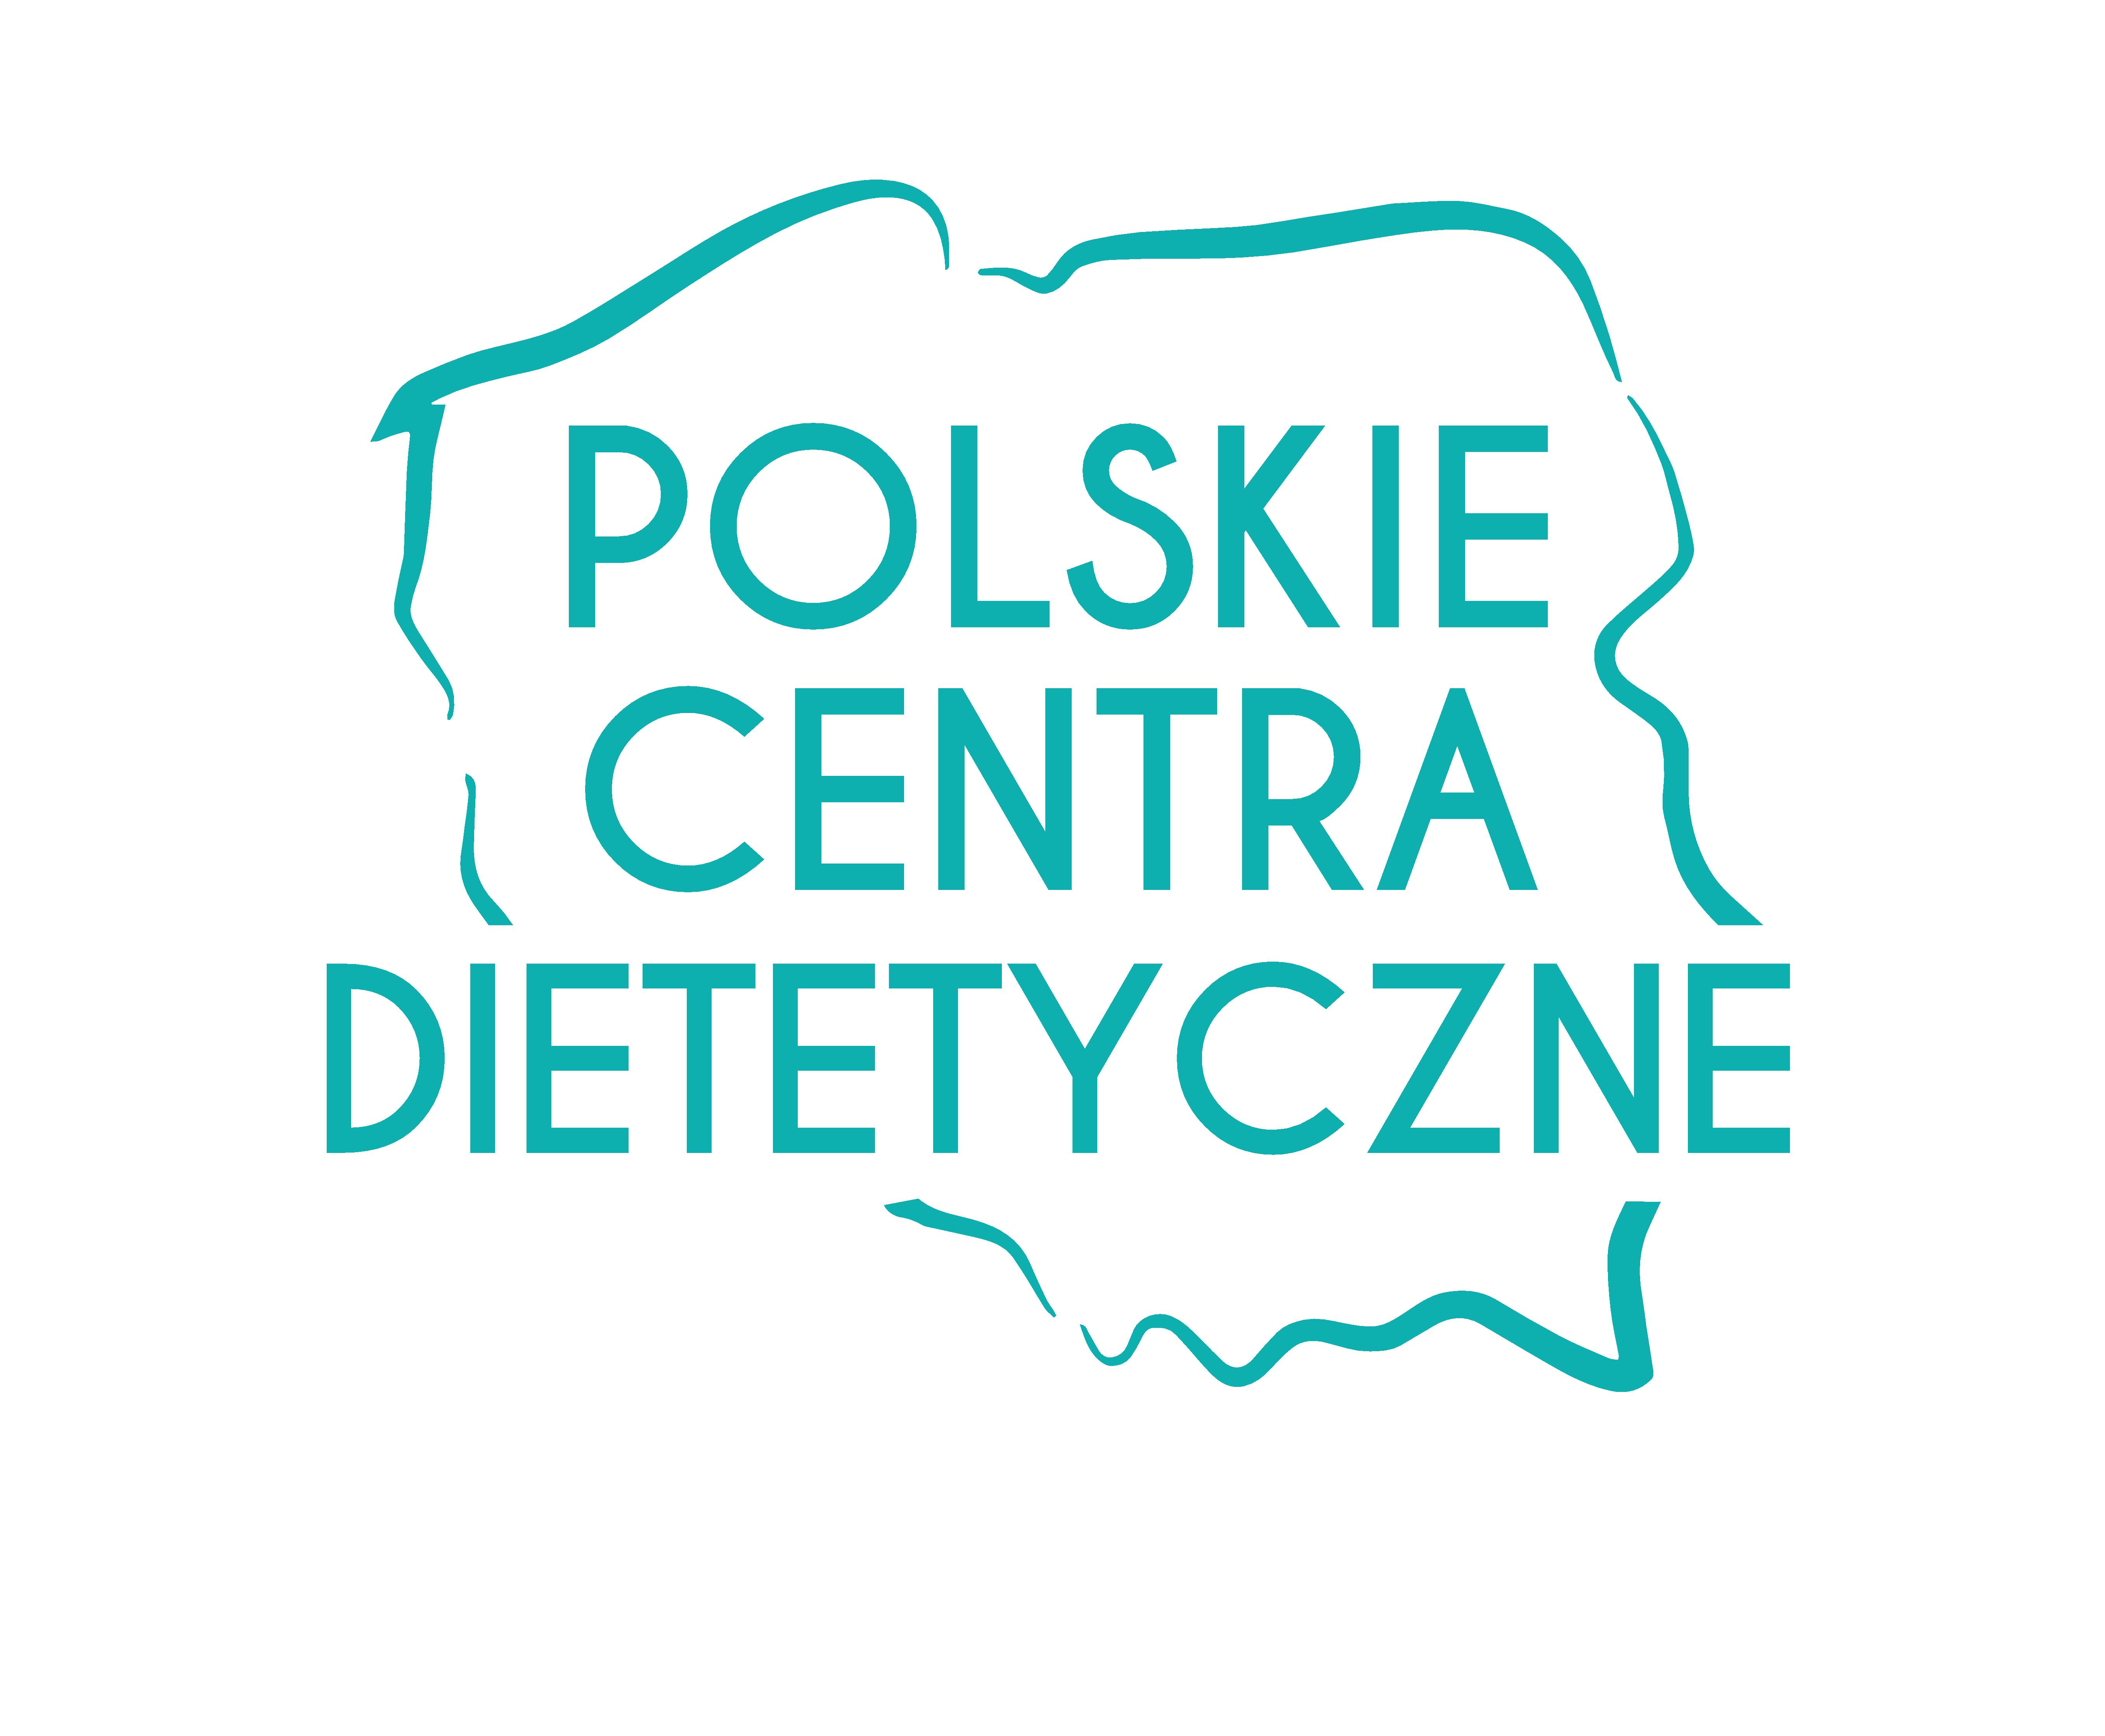 Bez dietetyka nadwaga nie znika! Darmowe konsultacje z dietetykiem w gabinecie Projekt Zdrowie w Lublinie